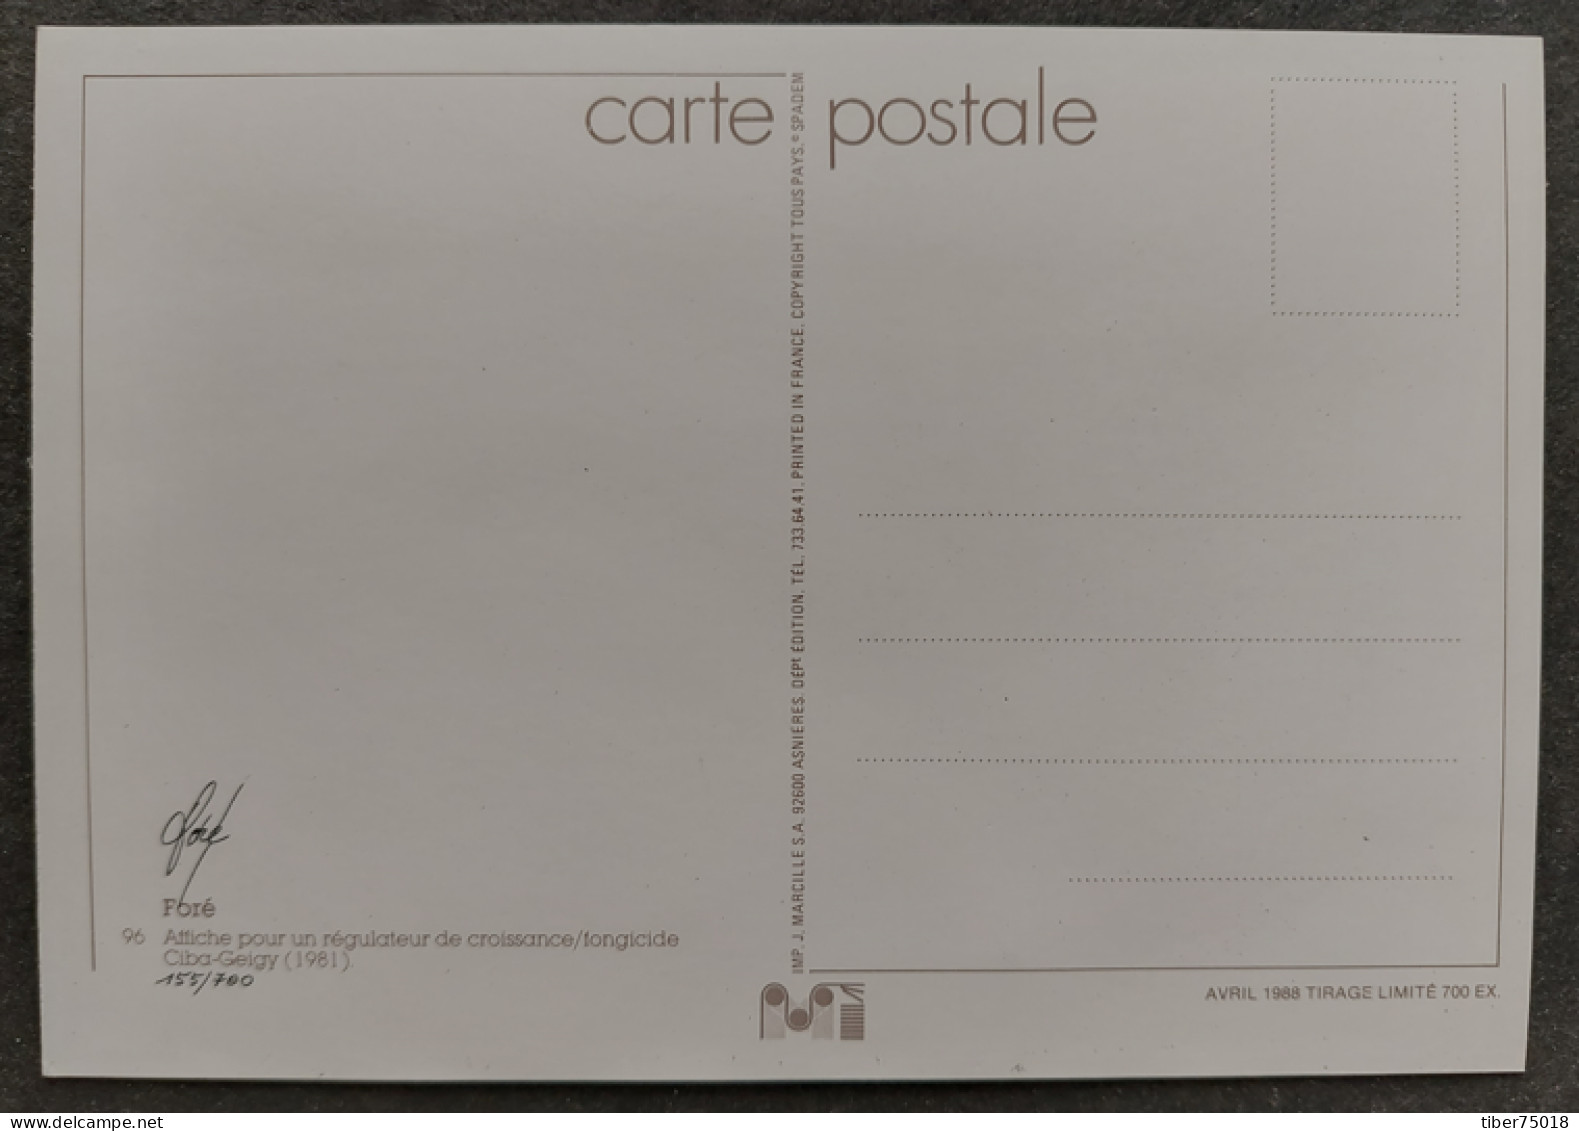 Carte Postale, Affiche Pour Un Régulateur De Croissance/fongicide Ciba-Geicy (1981) Illustration Foré (signature Au Dos) - Fore